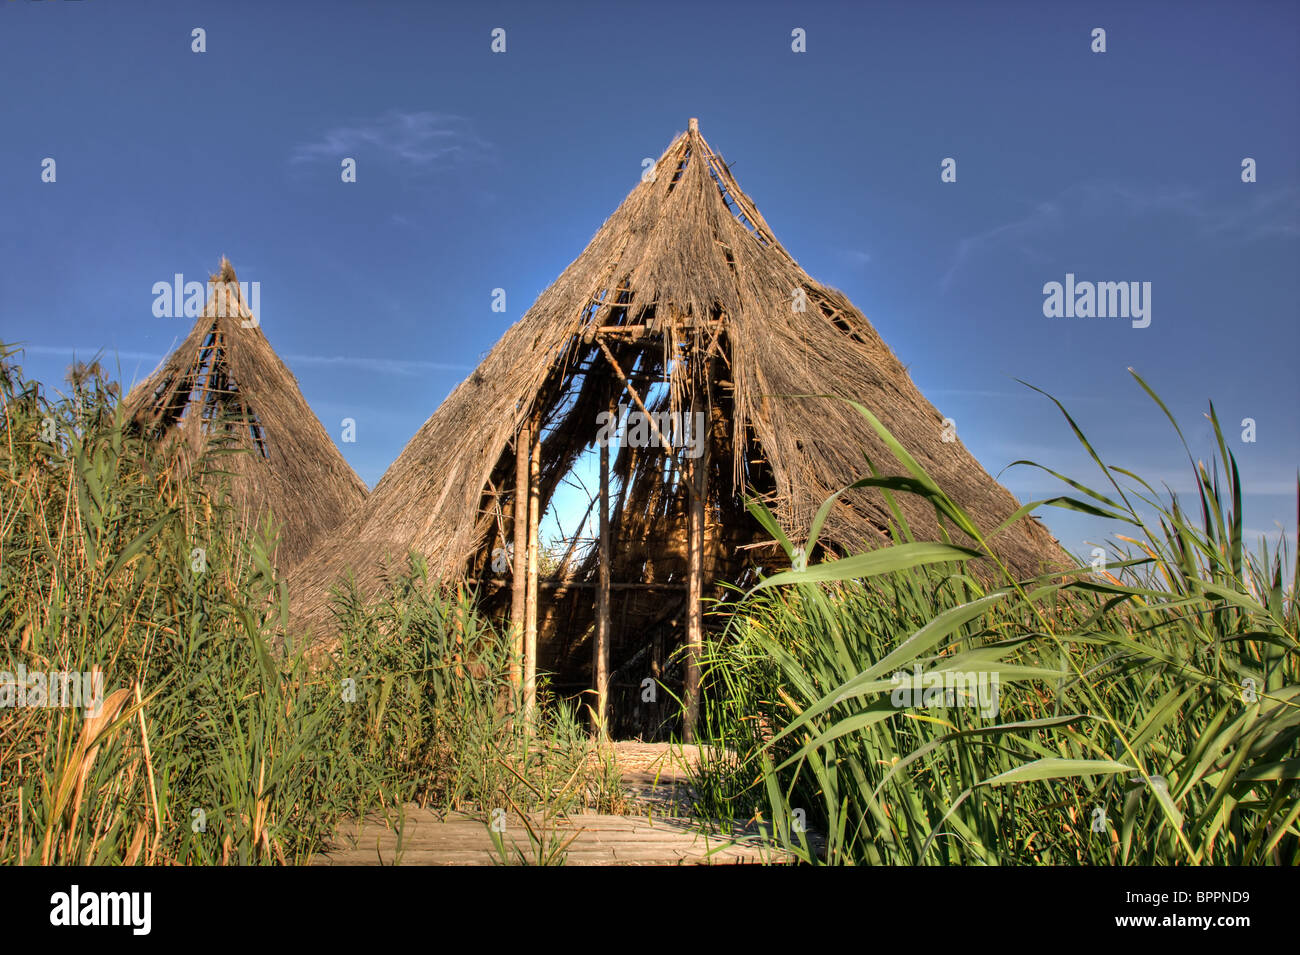 Le rovine di un villaggio celtico a Comana parco naturale, Romania. Foto Stock